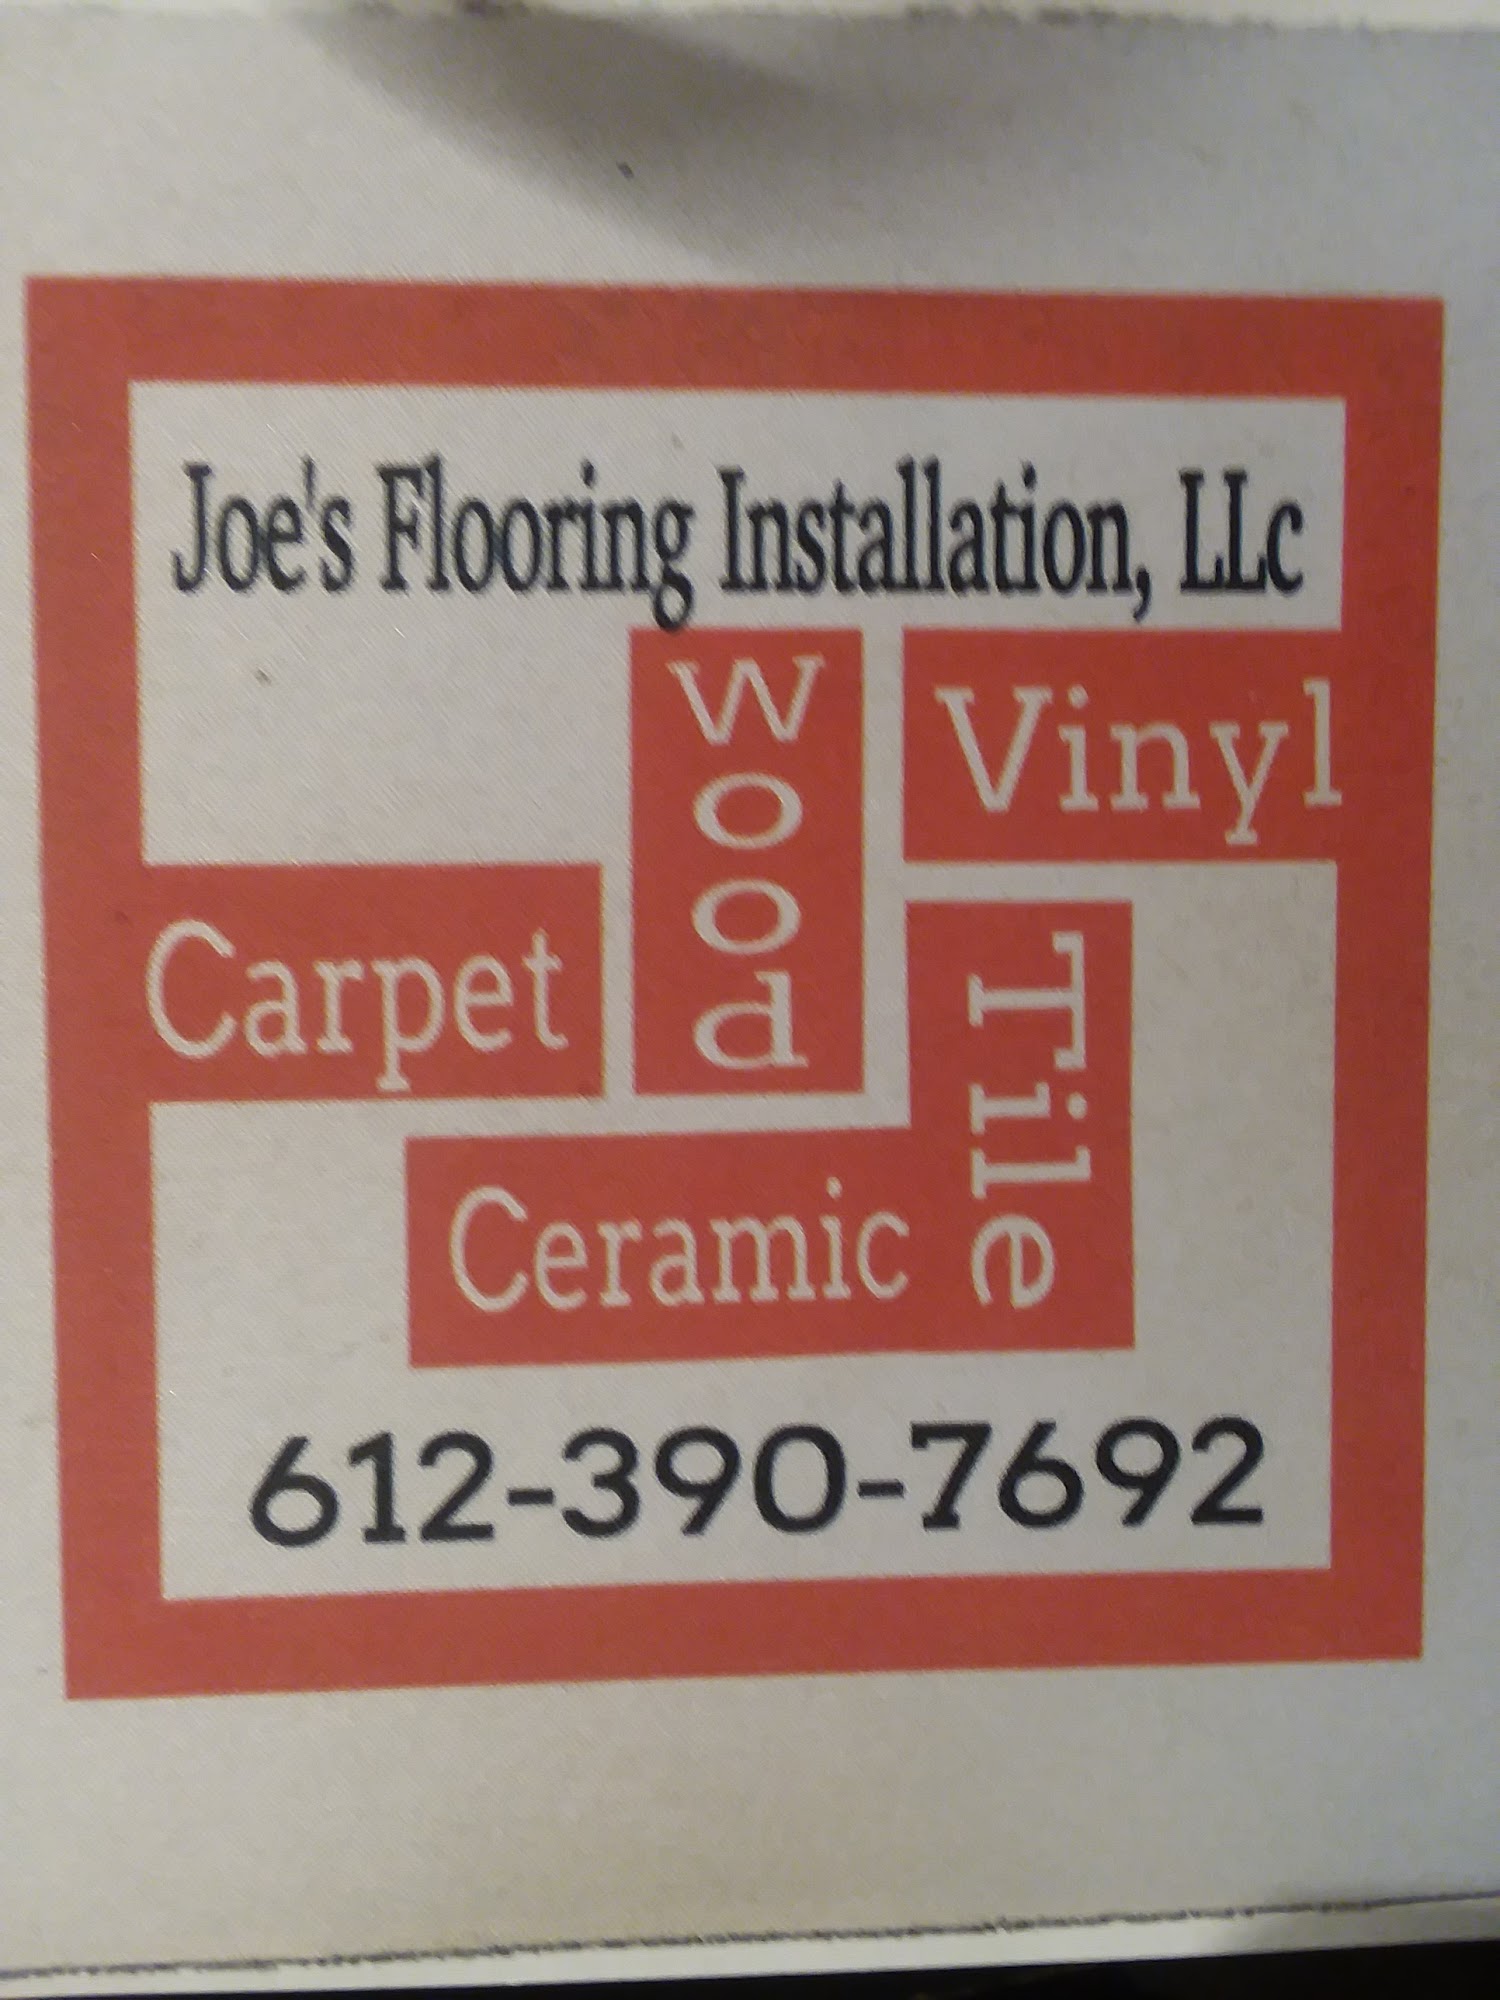 Joe's Flooring Installation LLC